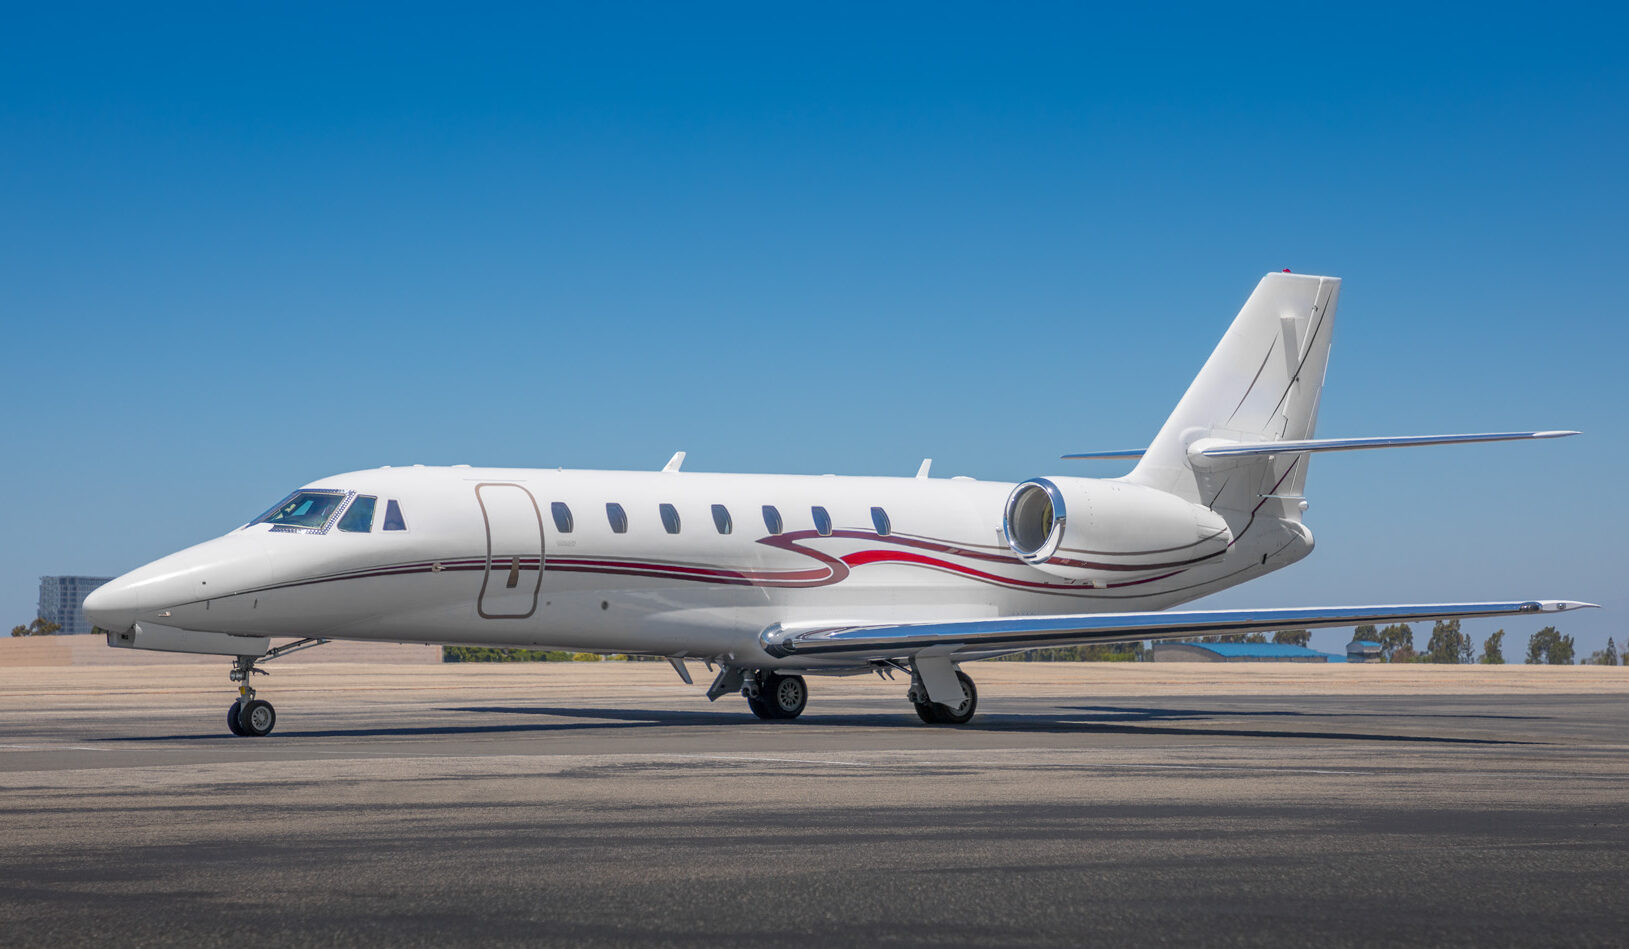 Desert Jet | Desert Jet Citation Sovereign Super Midsize Jet Now Available For Private Jet Charter